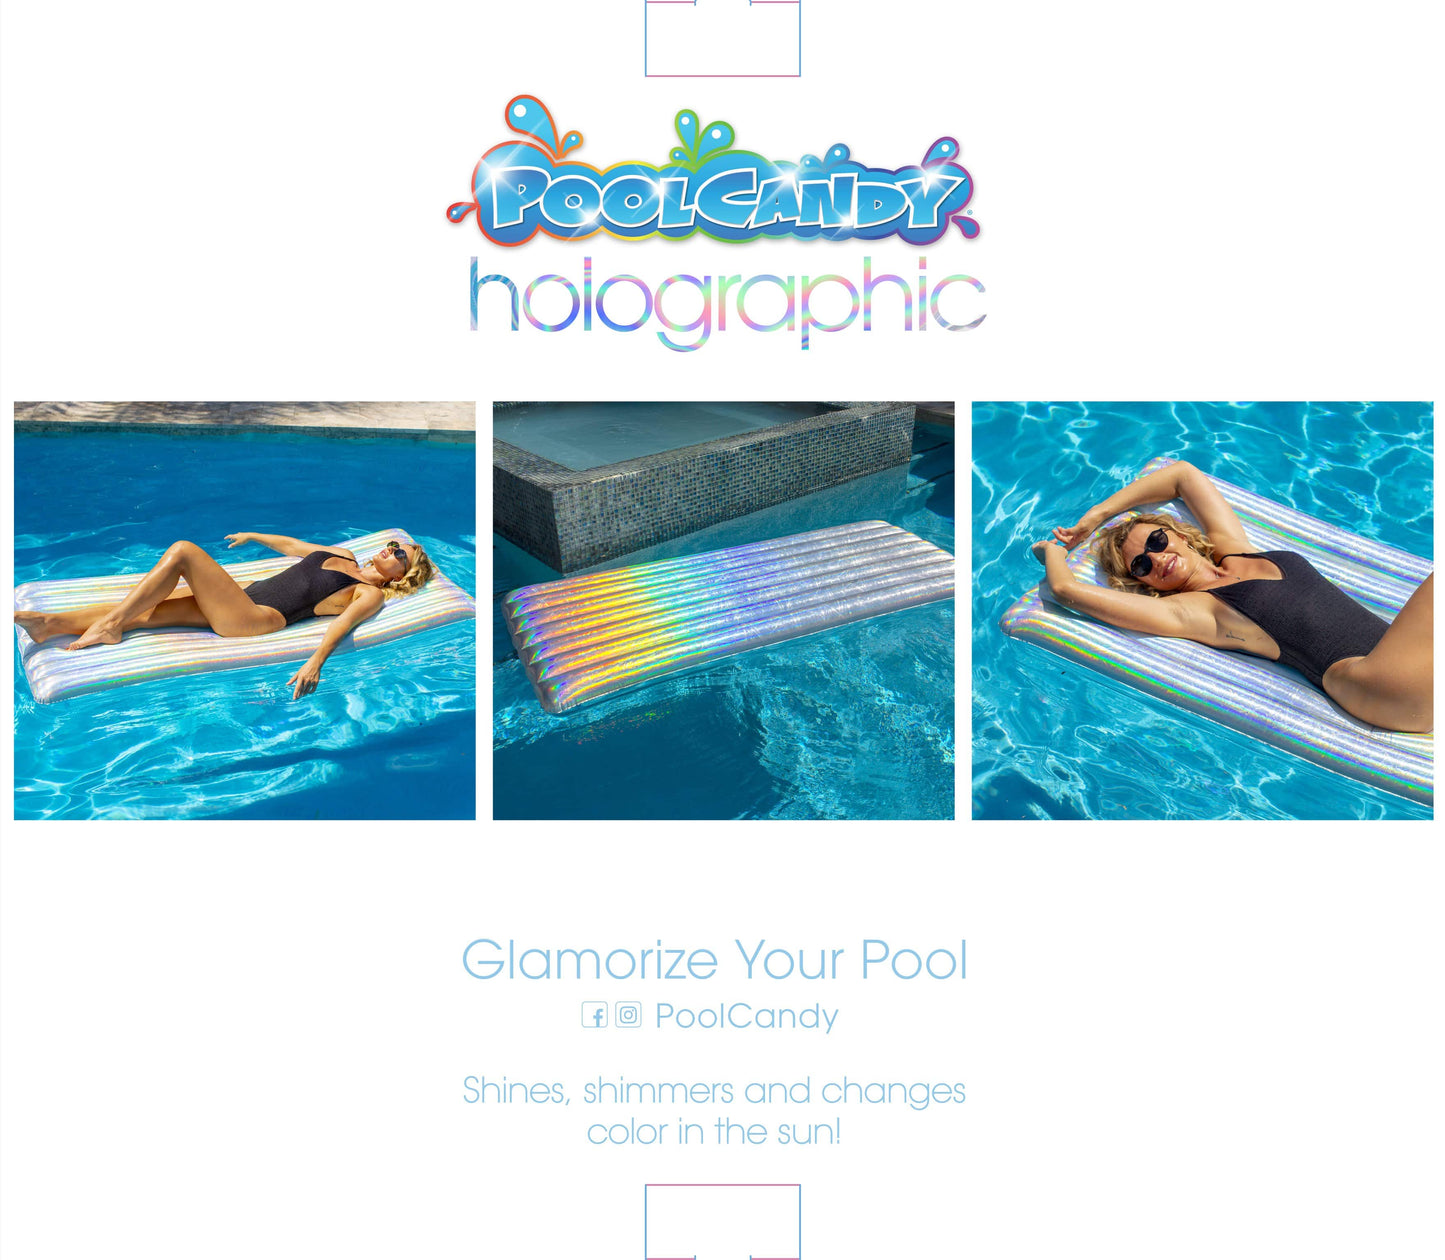 Poolcandy Pool Float PoolCandy Holographic Deluxe Pool Raft - 74 x 30"